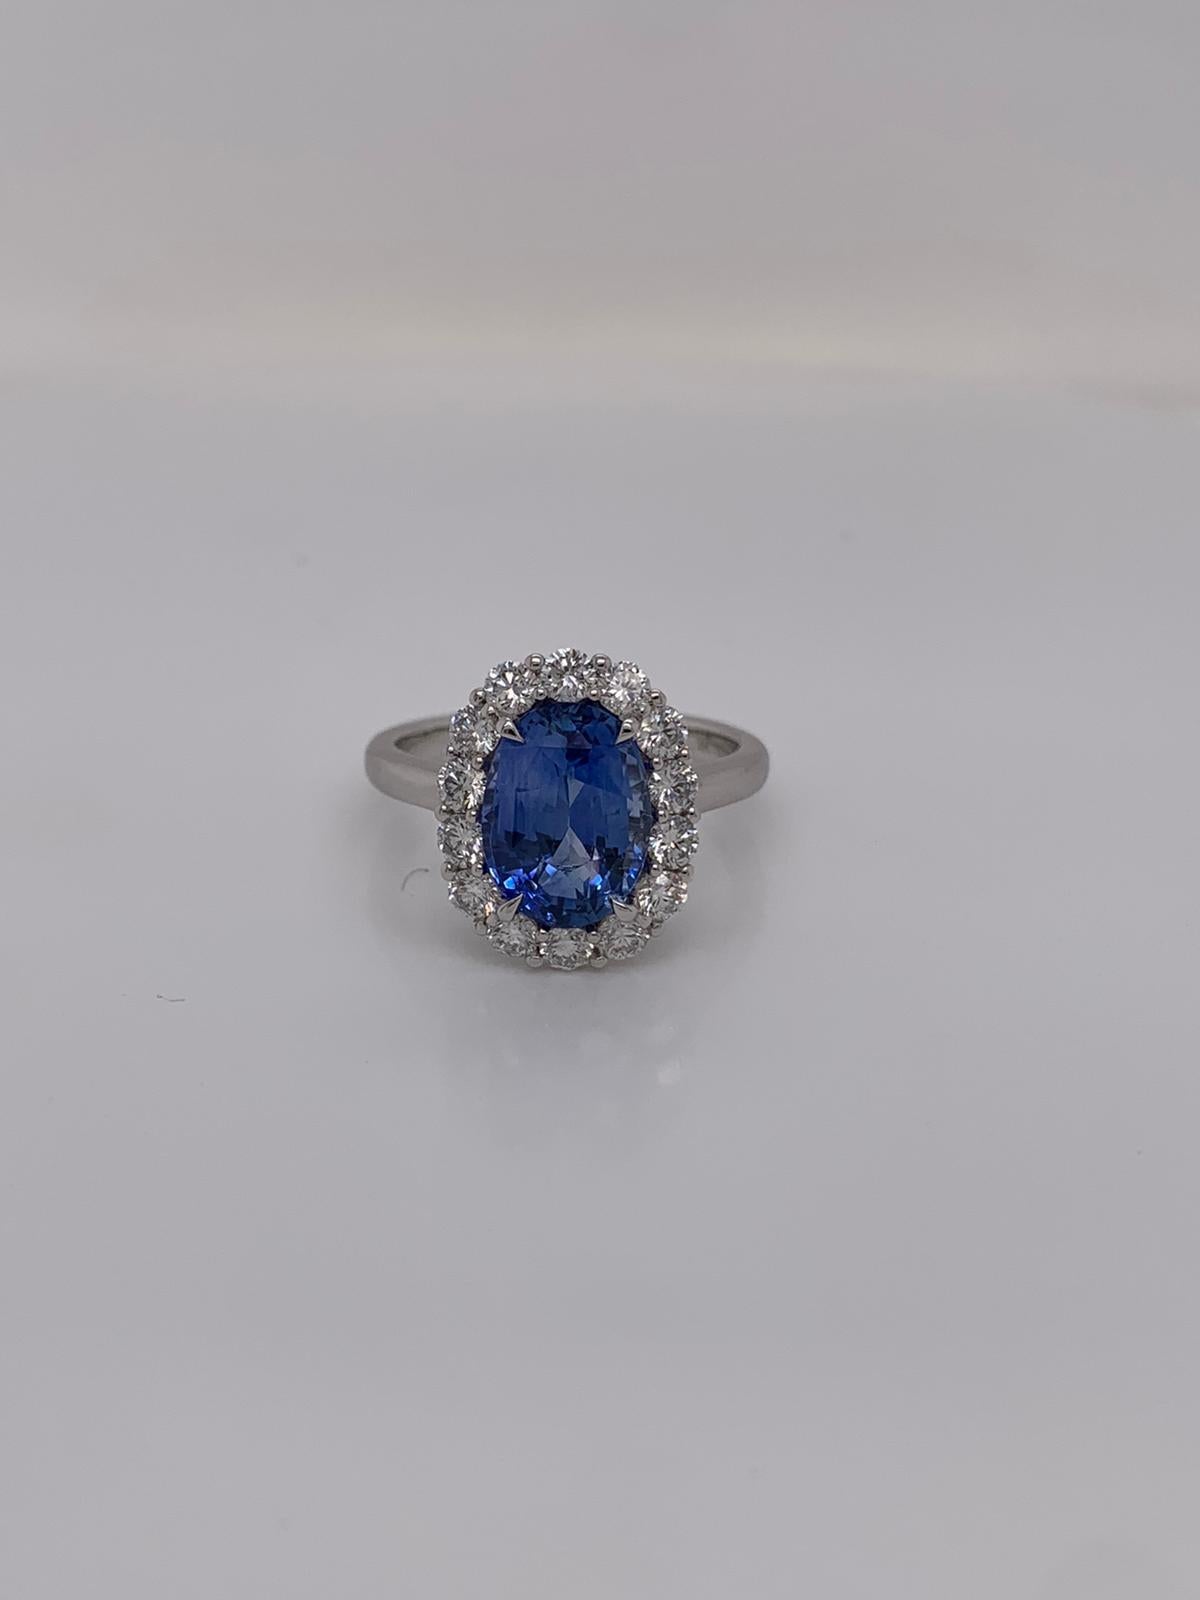 Saphir bleu ovale pesant 3.52 cts.
Mesure (10,3x7,5) mm
12 pièces de diamants pesant 0,78 cts
Bague en or blanc 18k